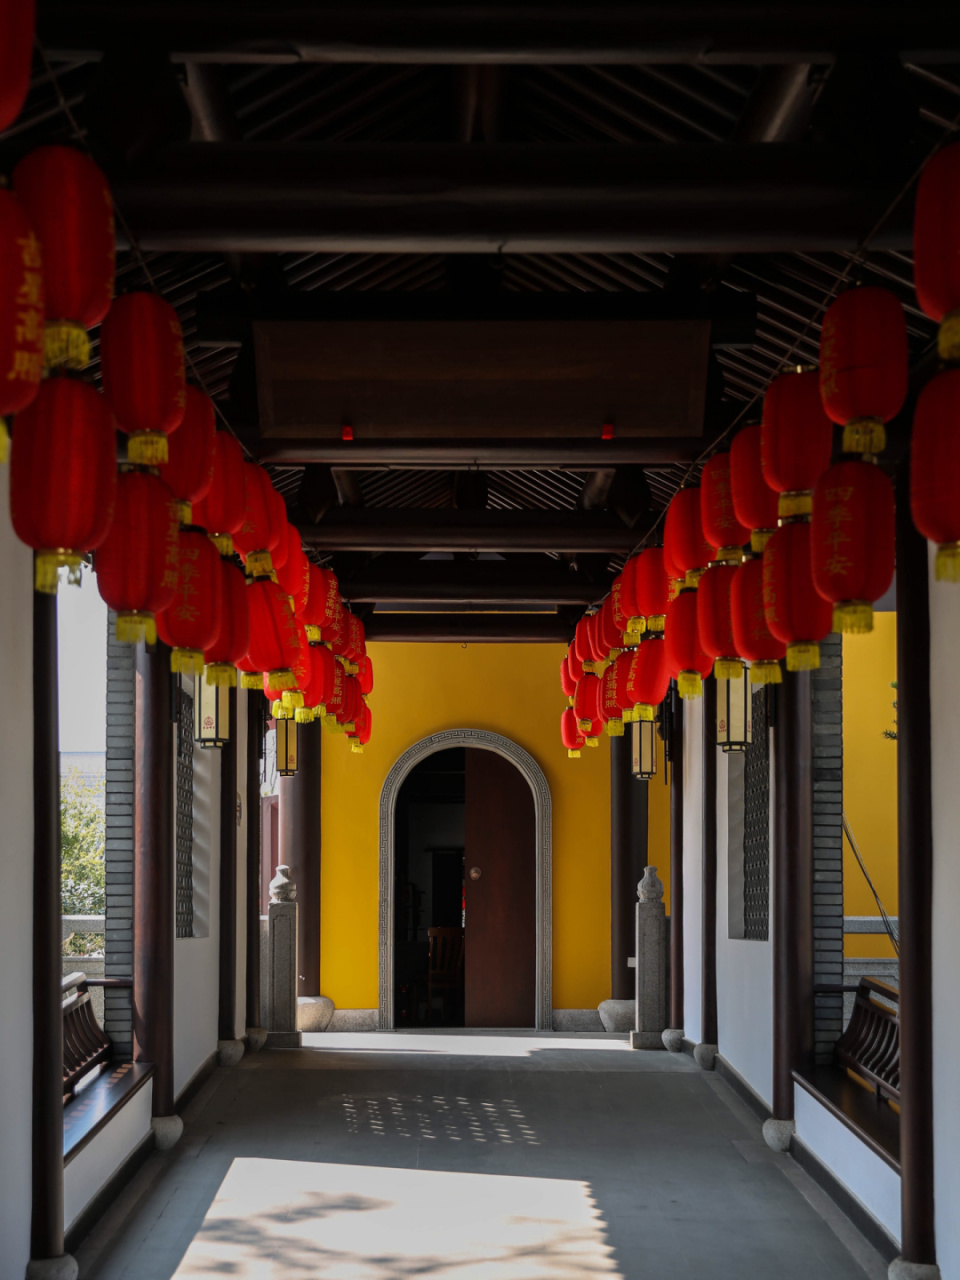 桐乡香海禅寺 寺院都可以如这般平和开放 95:几天前刷到这家寺院